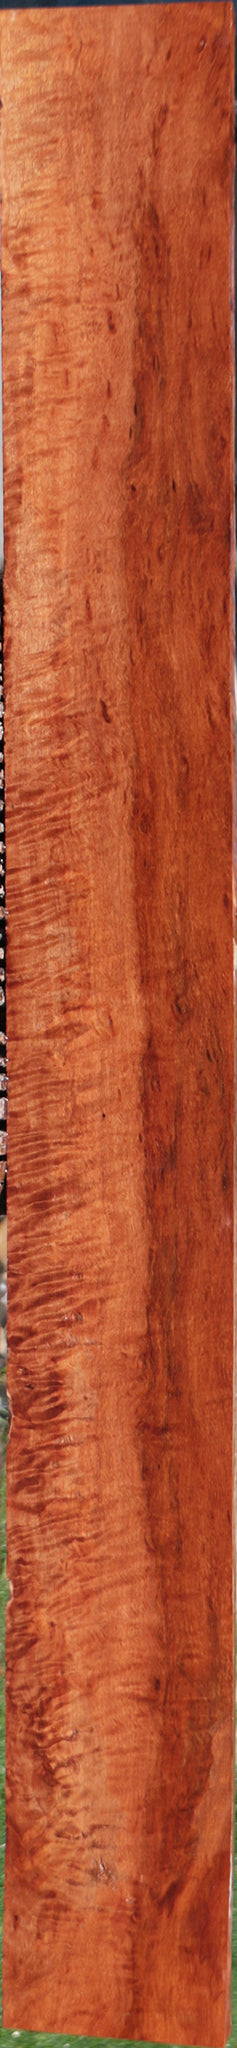 Exhibition Rambutan Lumber